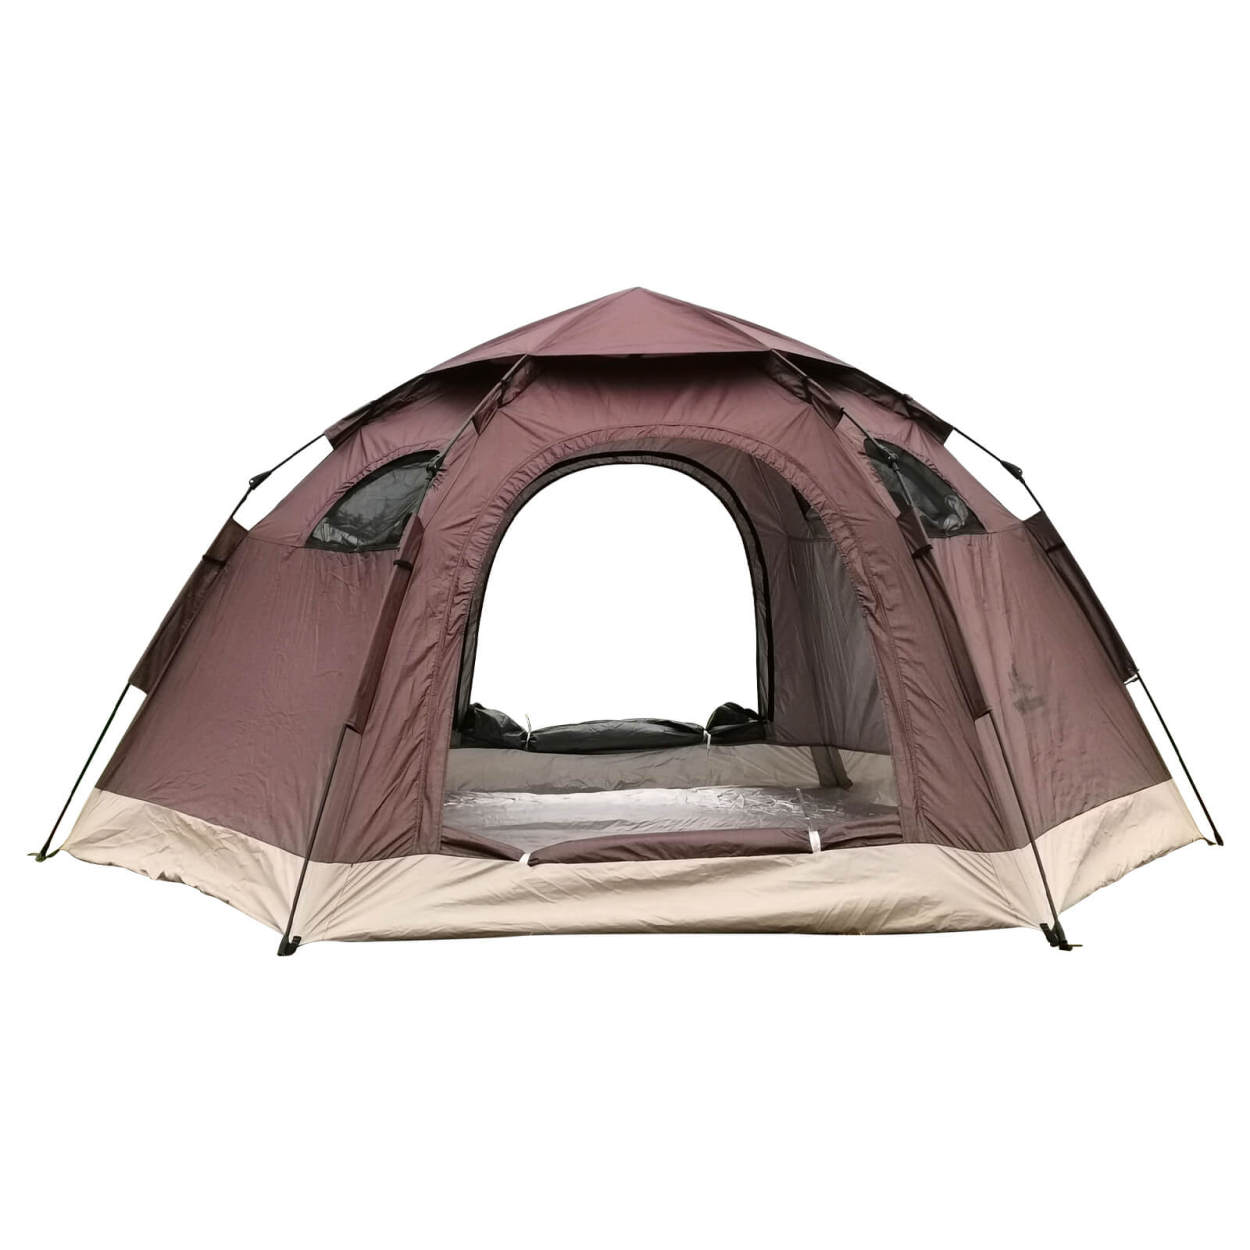 テント ワンタッチテント キャンプ ドーム 5人用 簡単設営 大型 